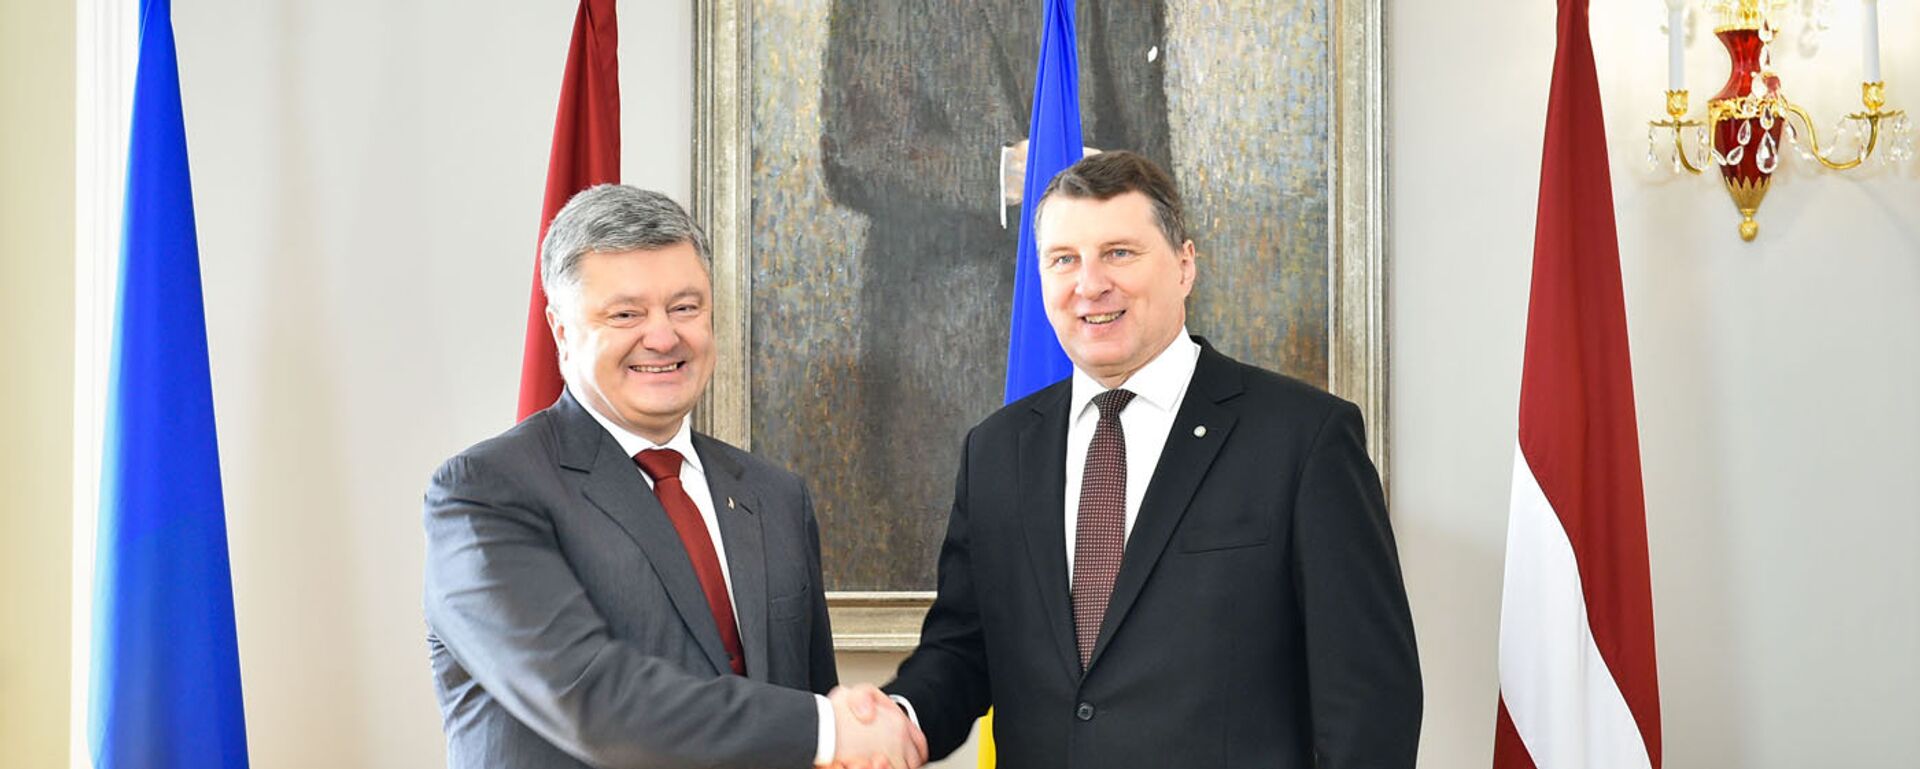 Официальный визит президента Украины Петра Порошенко в Латвийскую Республику - Sputnik Латвия, 1920, 01.02.2018